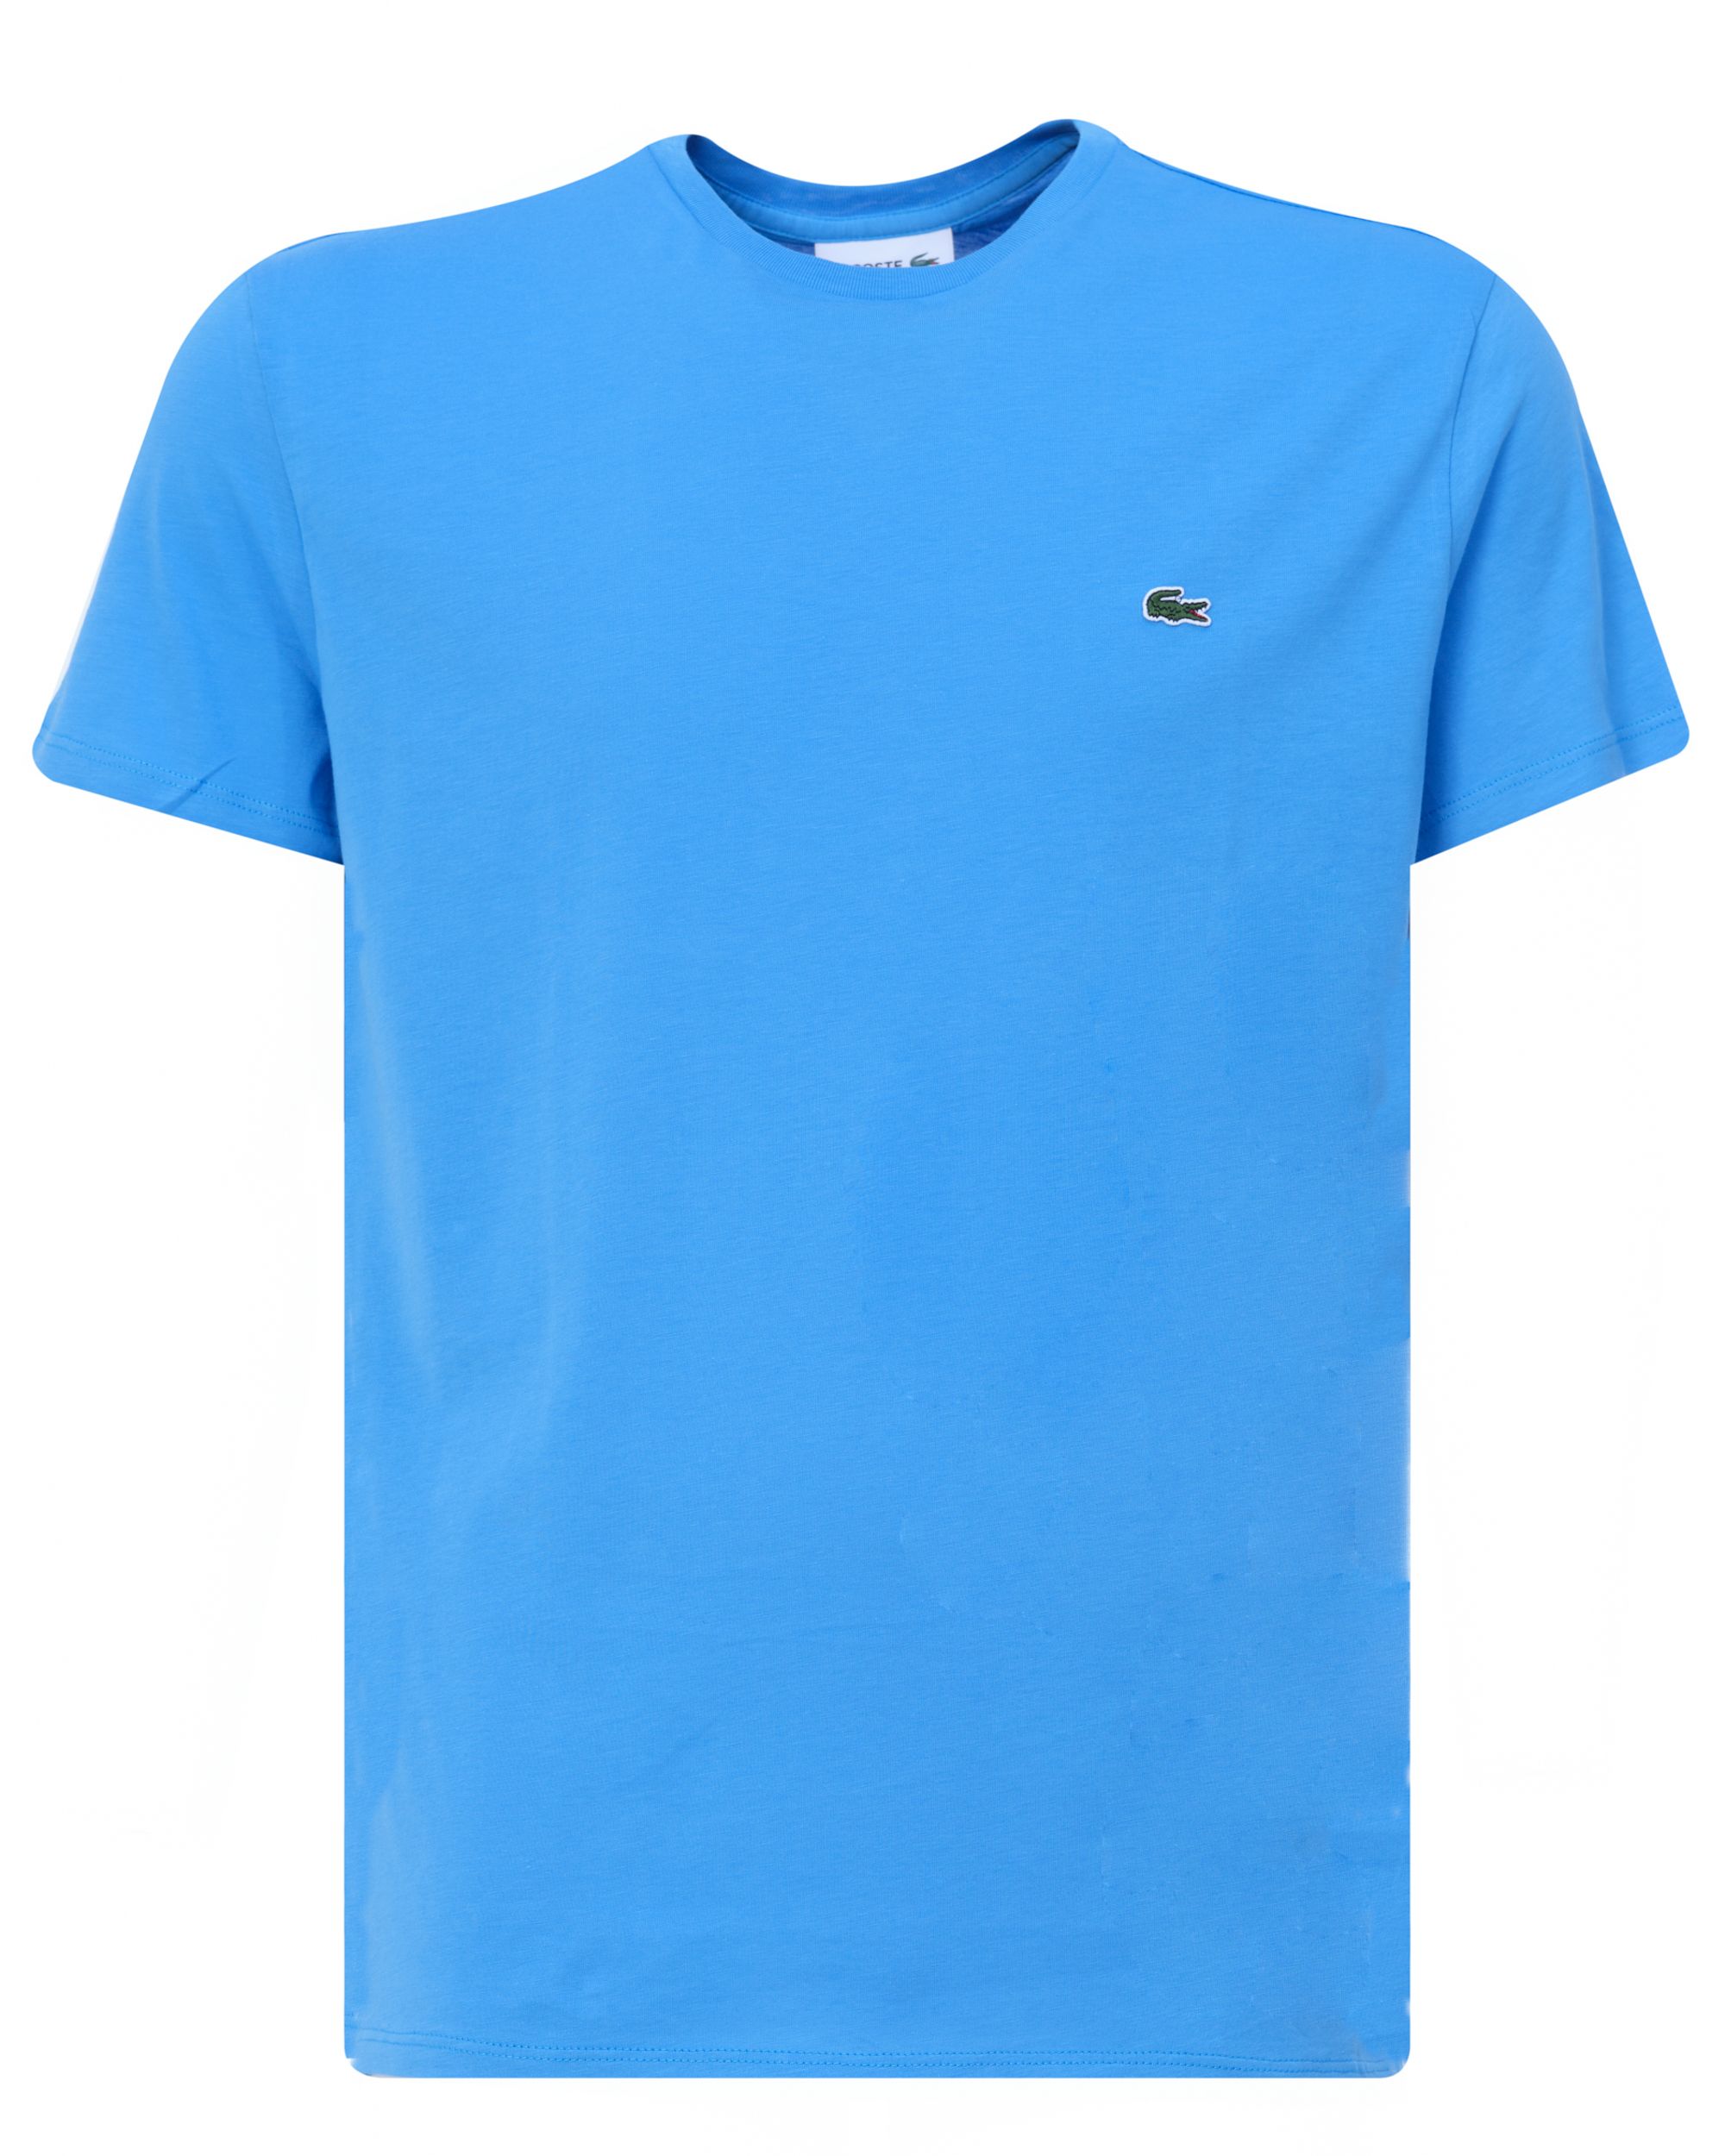 Lacoste T-shirt KM Licht blauw 078822-002-4